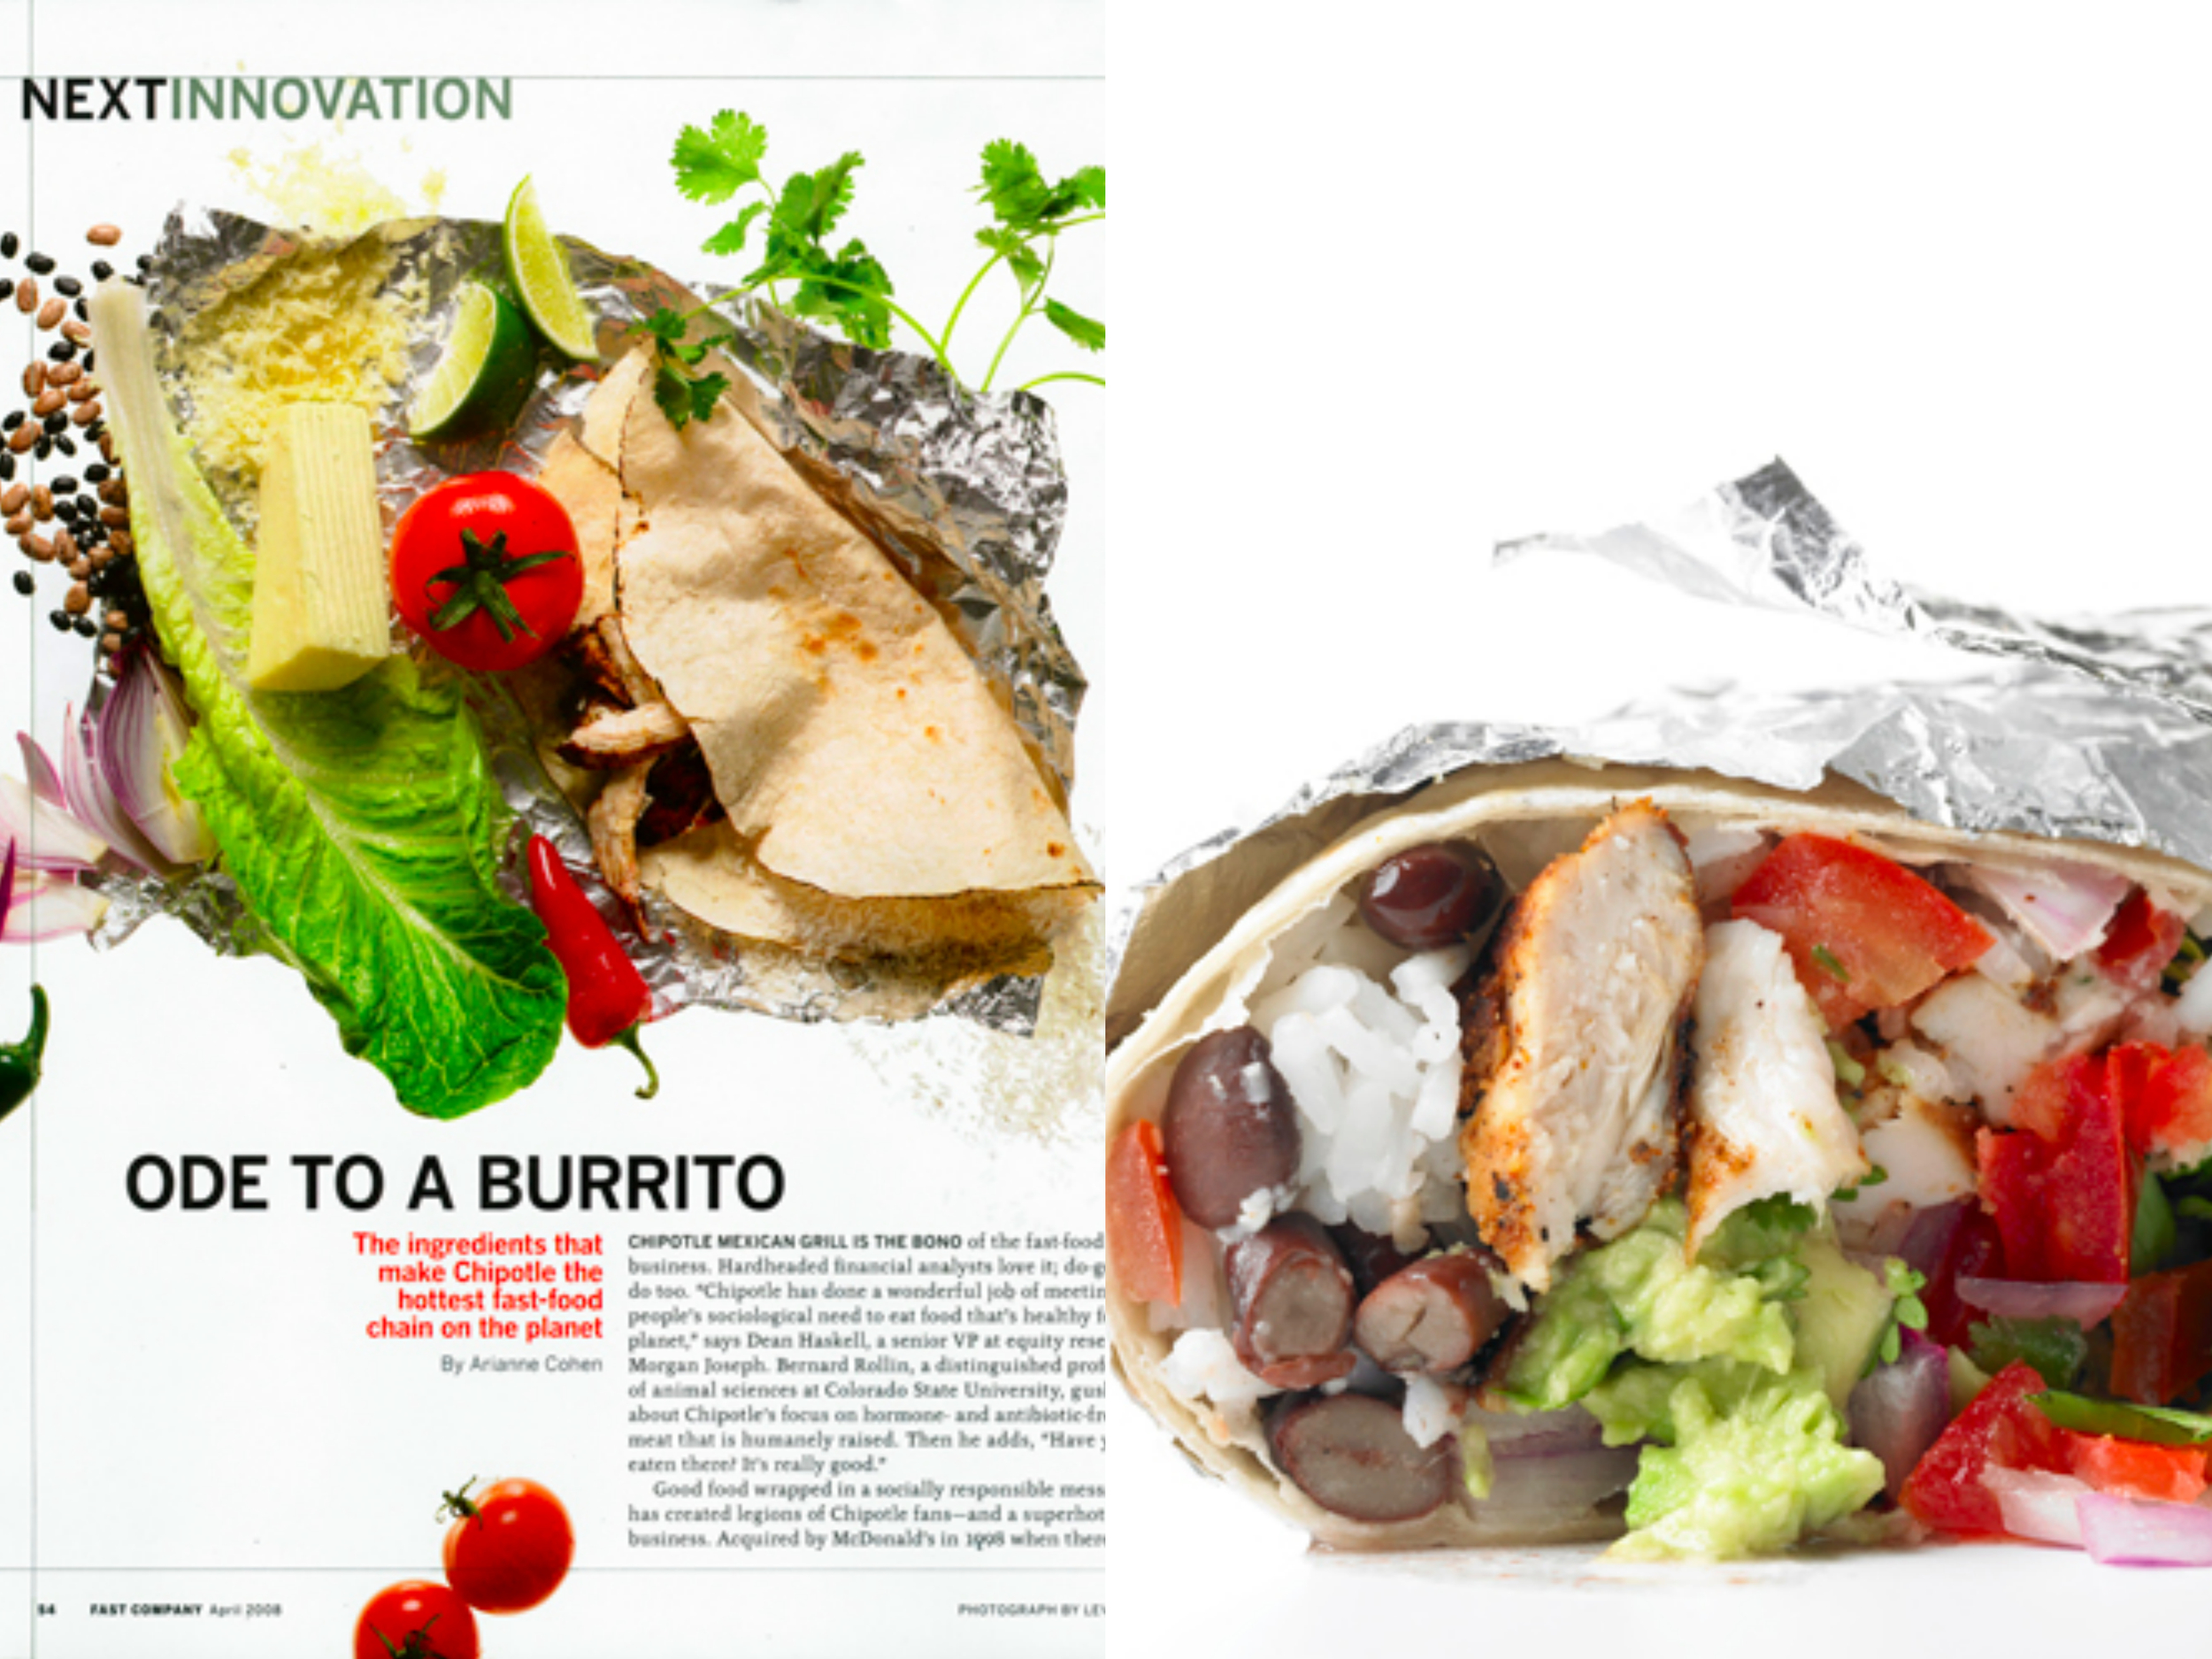 Fast Company Burrito Collage.jpg